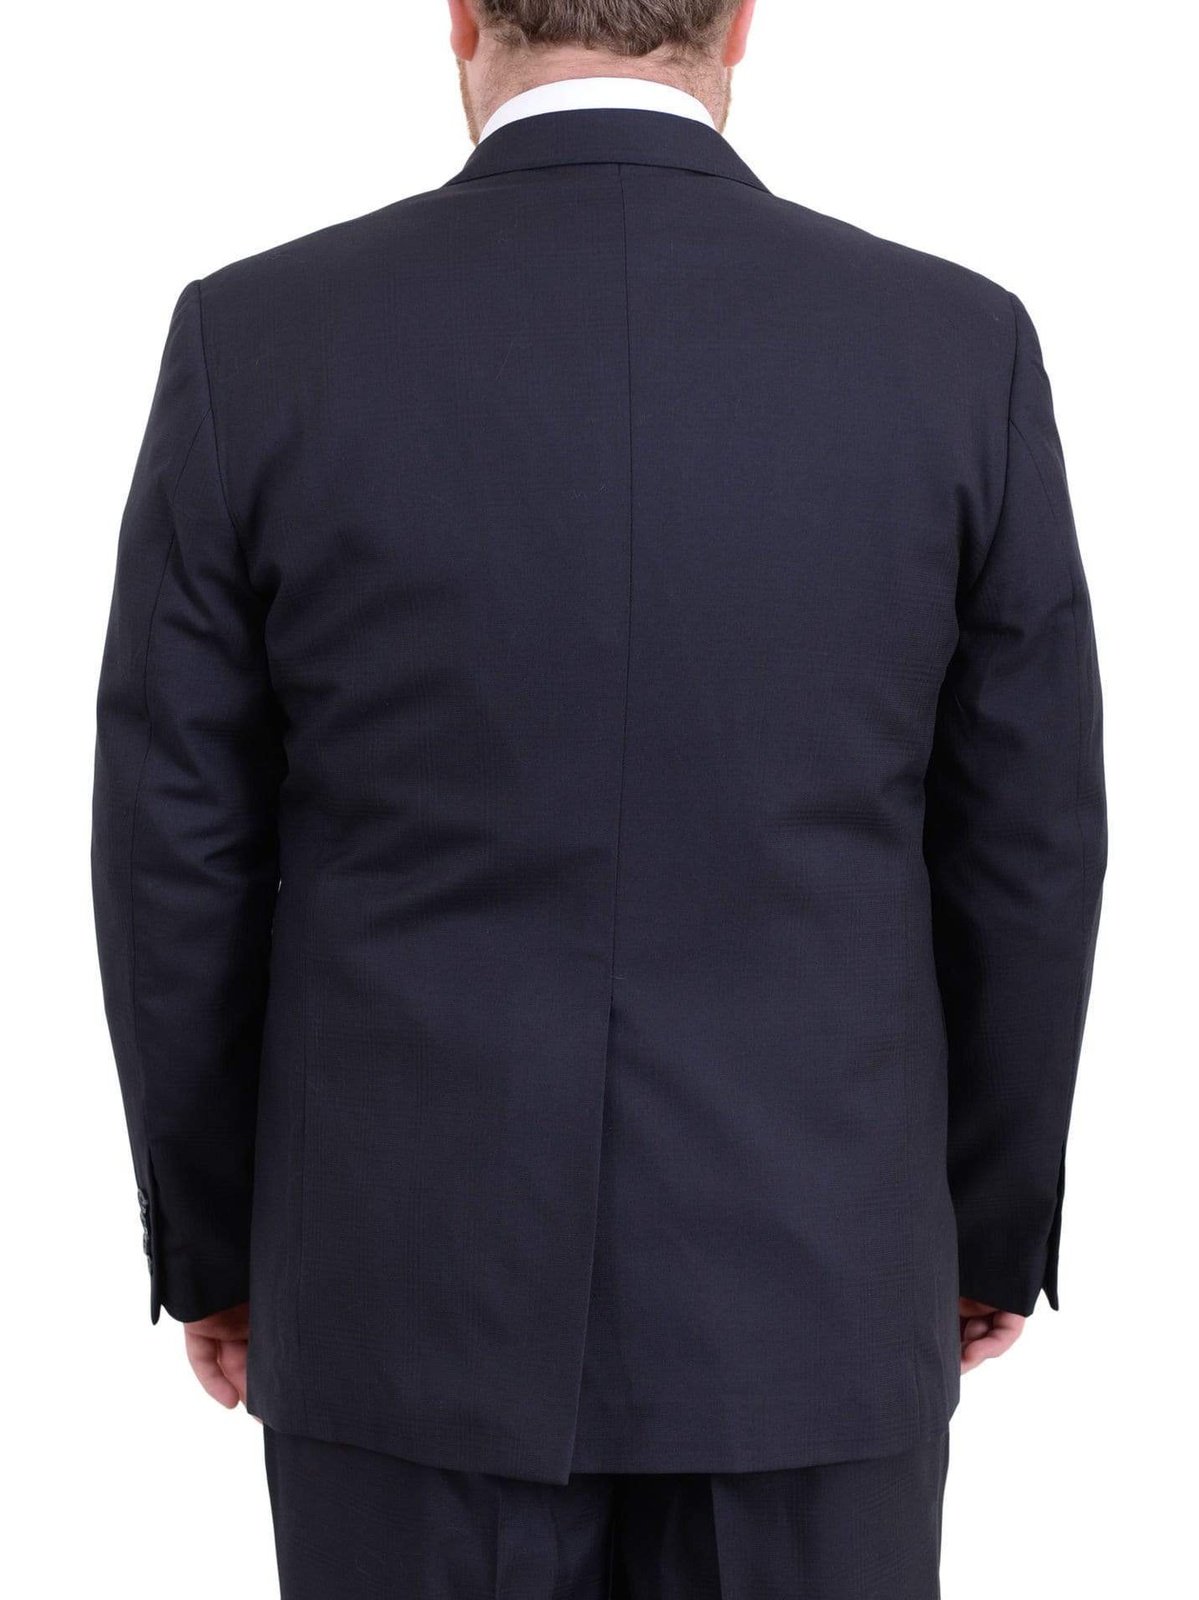 Arthur Black Sale Suits Men's Arthur Black Executive Portly Fit Navy Blue Plaid Two Button Wool Suit